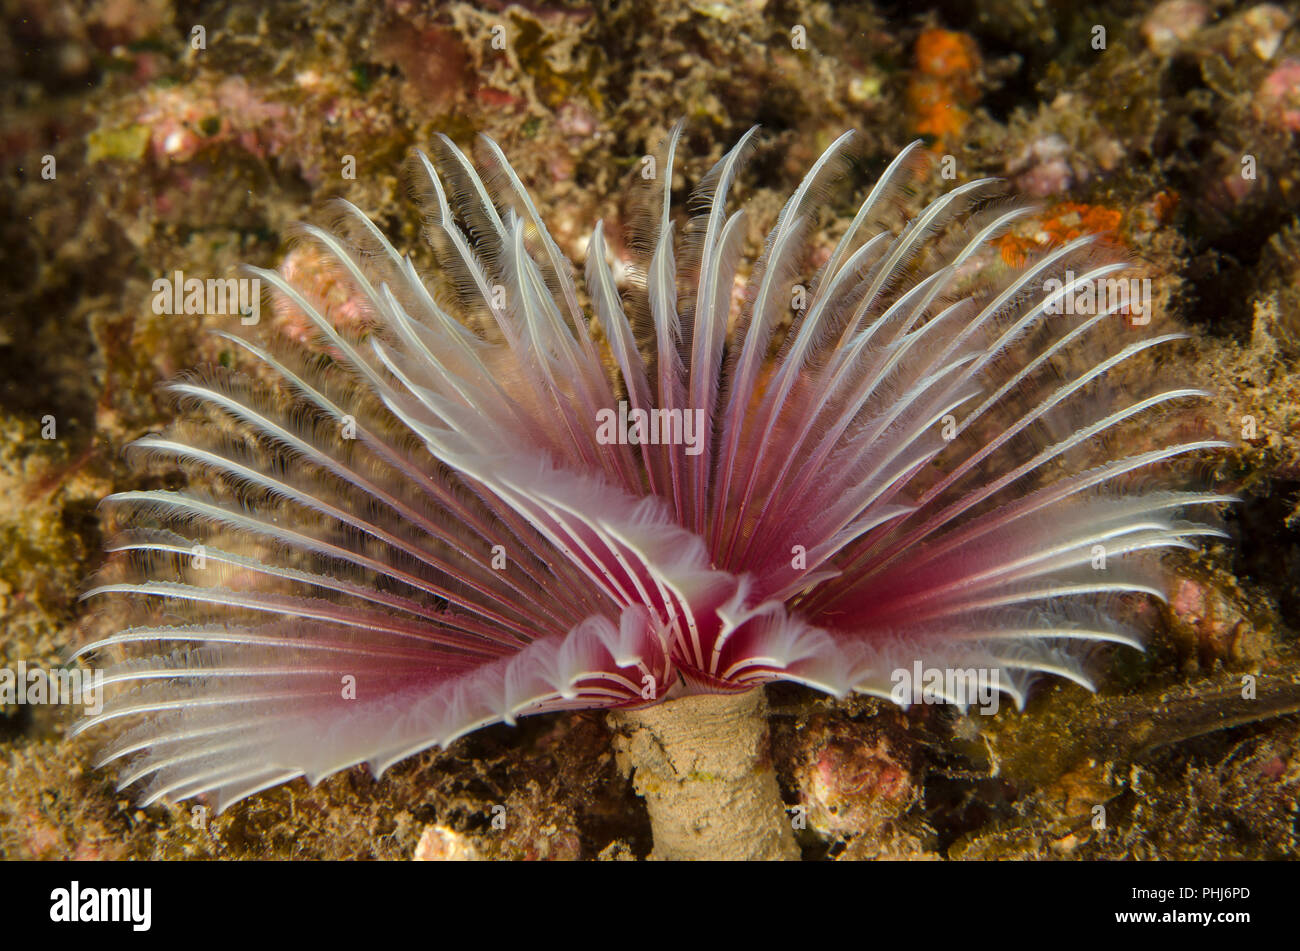 Tubeworm, Sabellastarte sp., Sabellidae, Anilao, Philippines, Philippine Sea, Pacific Ocean, Asia Stock Photo